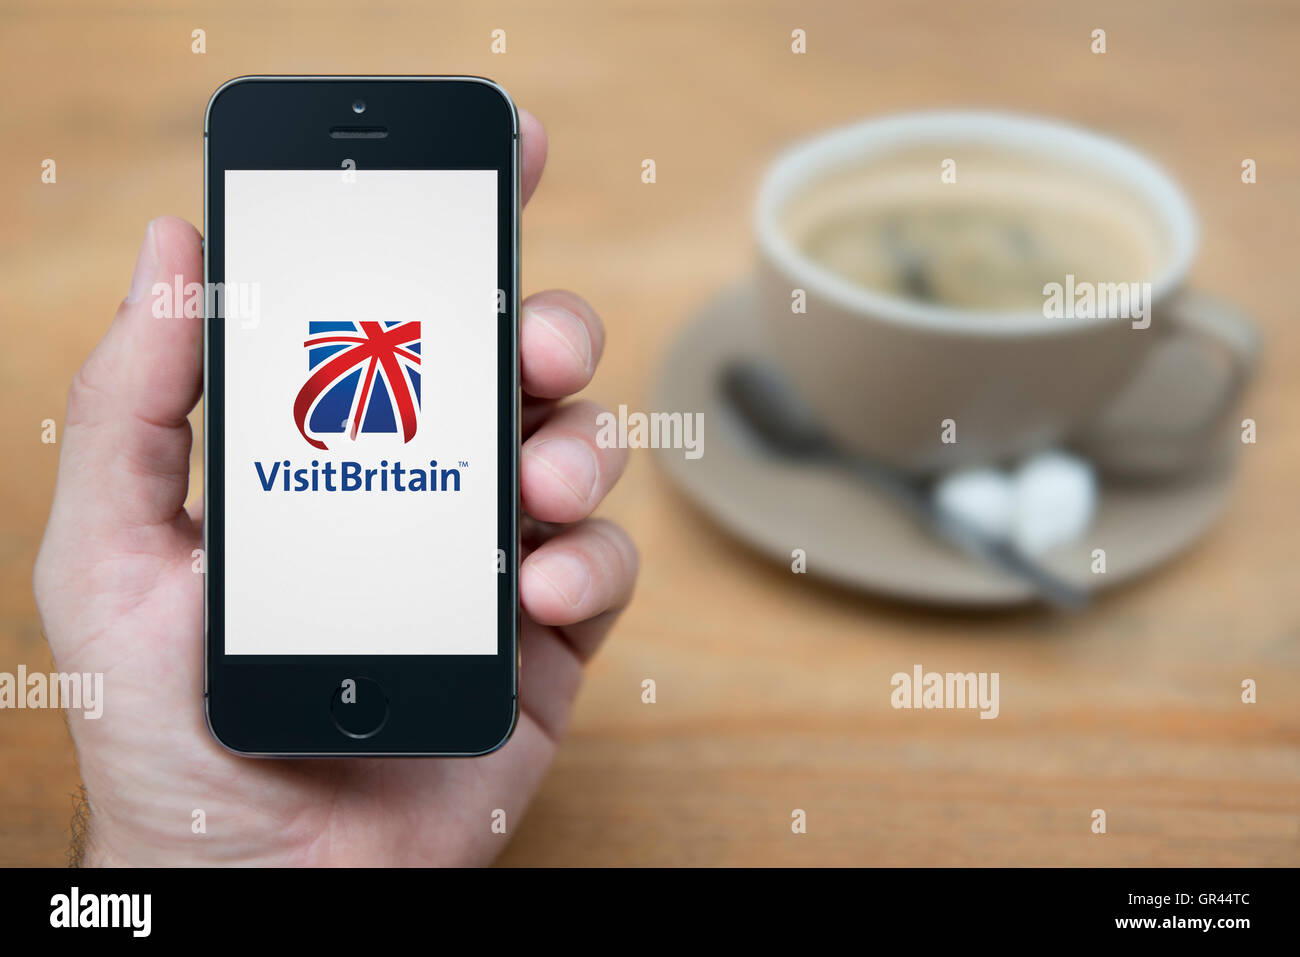 Un homme se penche sur son iPhone qui affiche le logo Visit Britain (usage éditorial uniquement). Banque D'Images